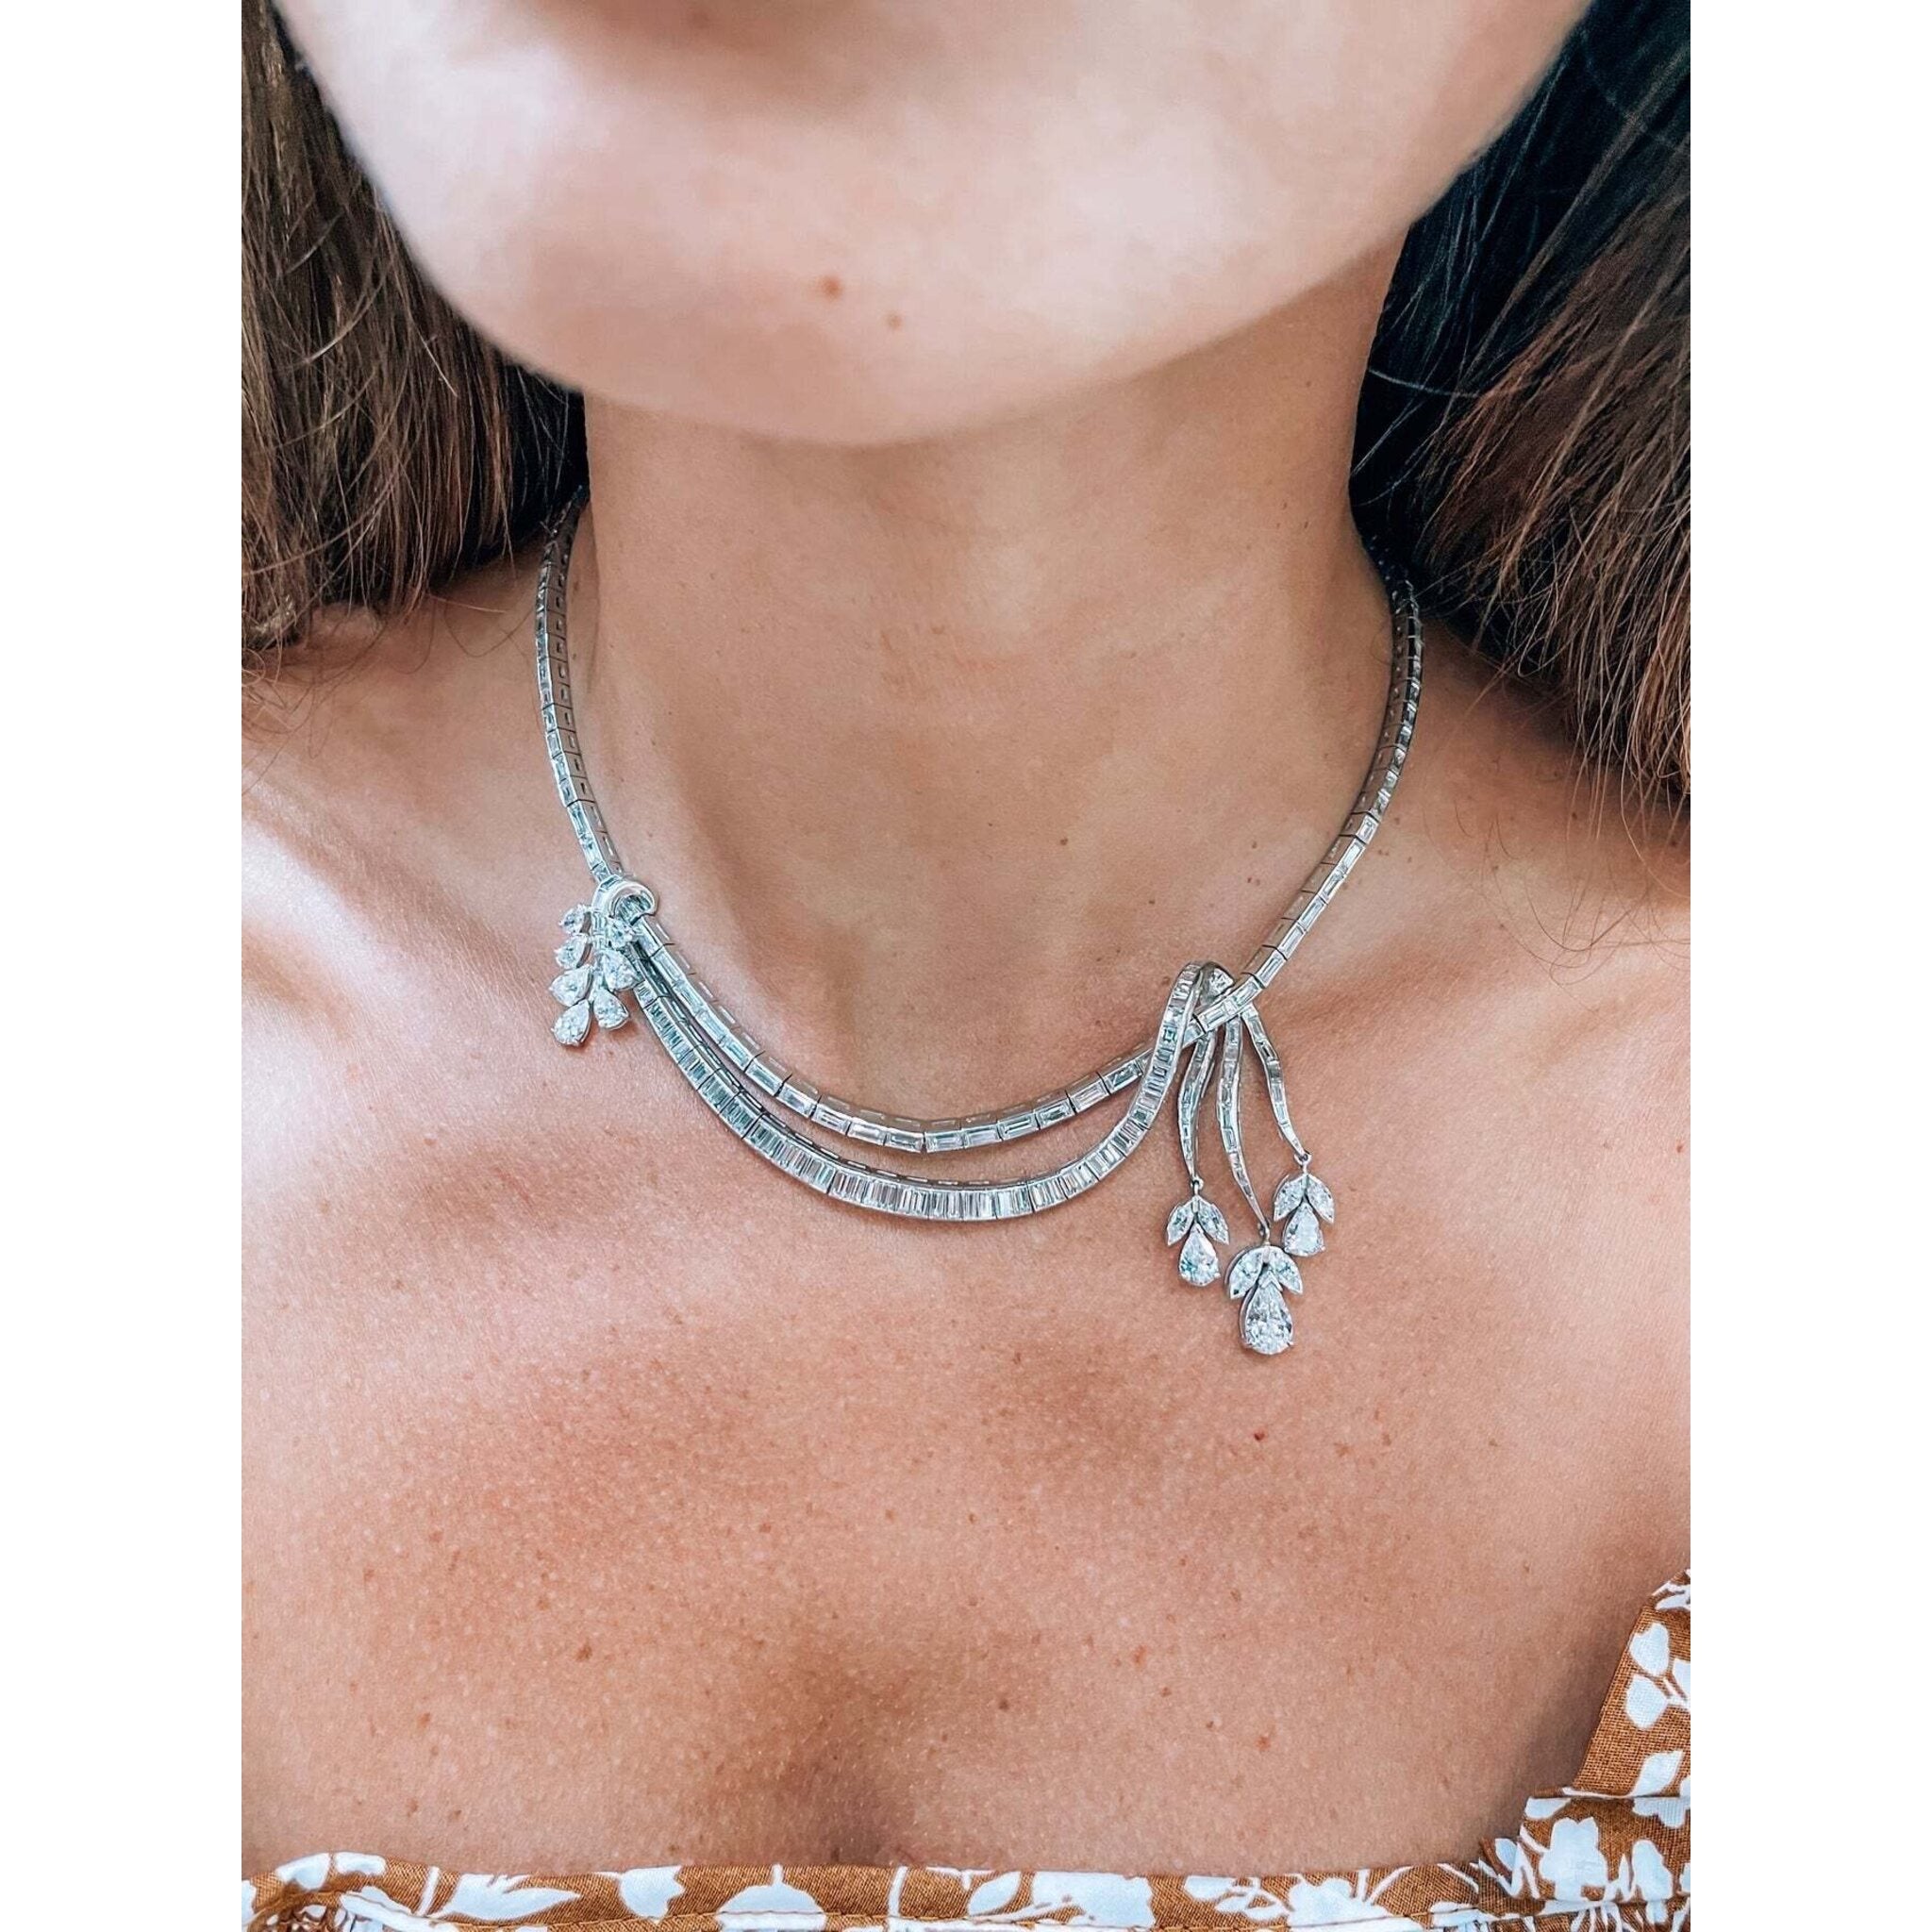 Regard Jewelry - Estate Art Deco Diamond Necklace at Regard